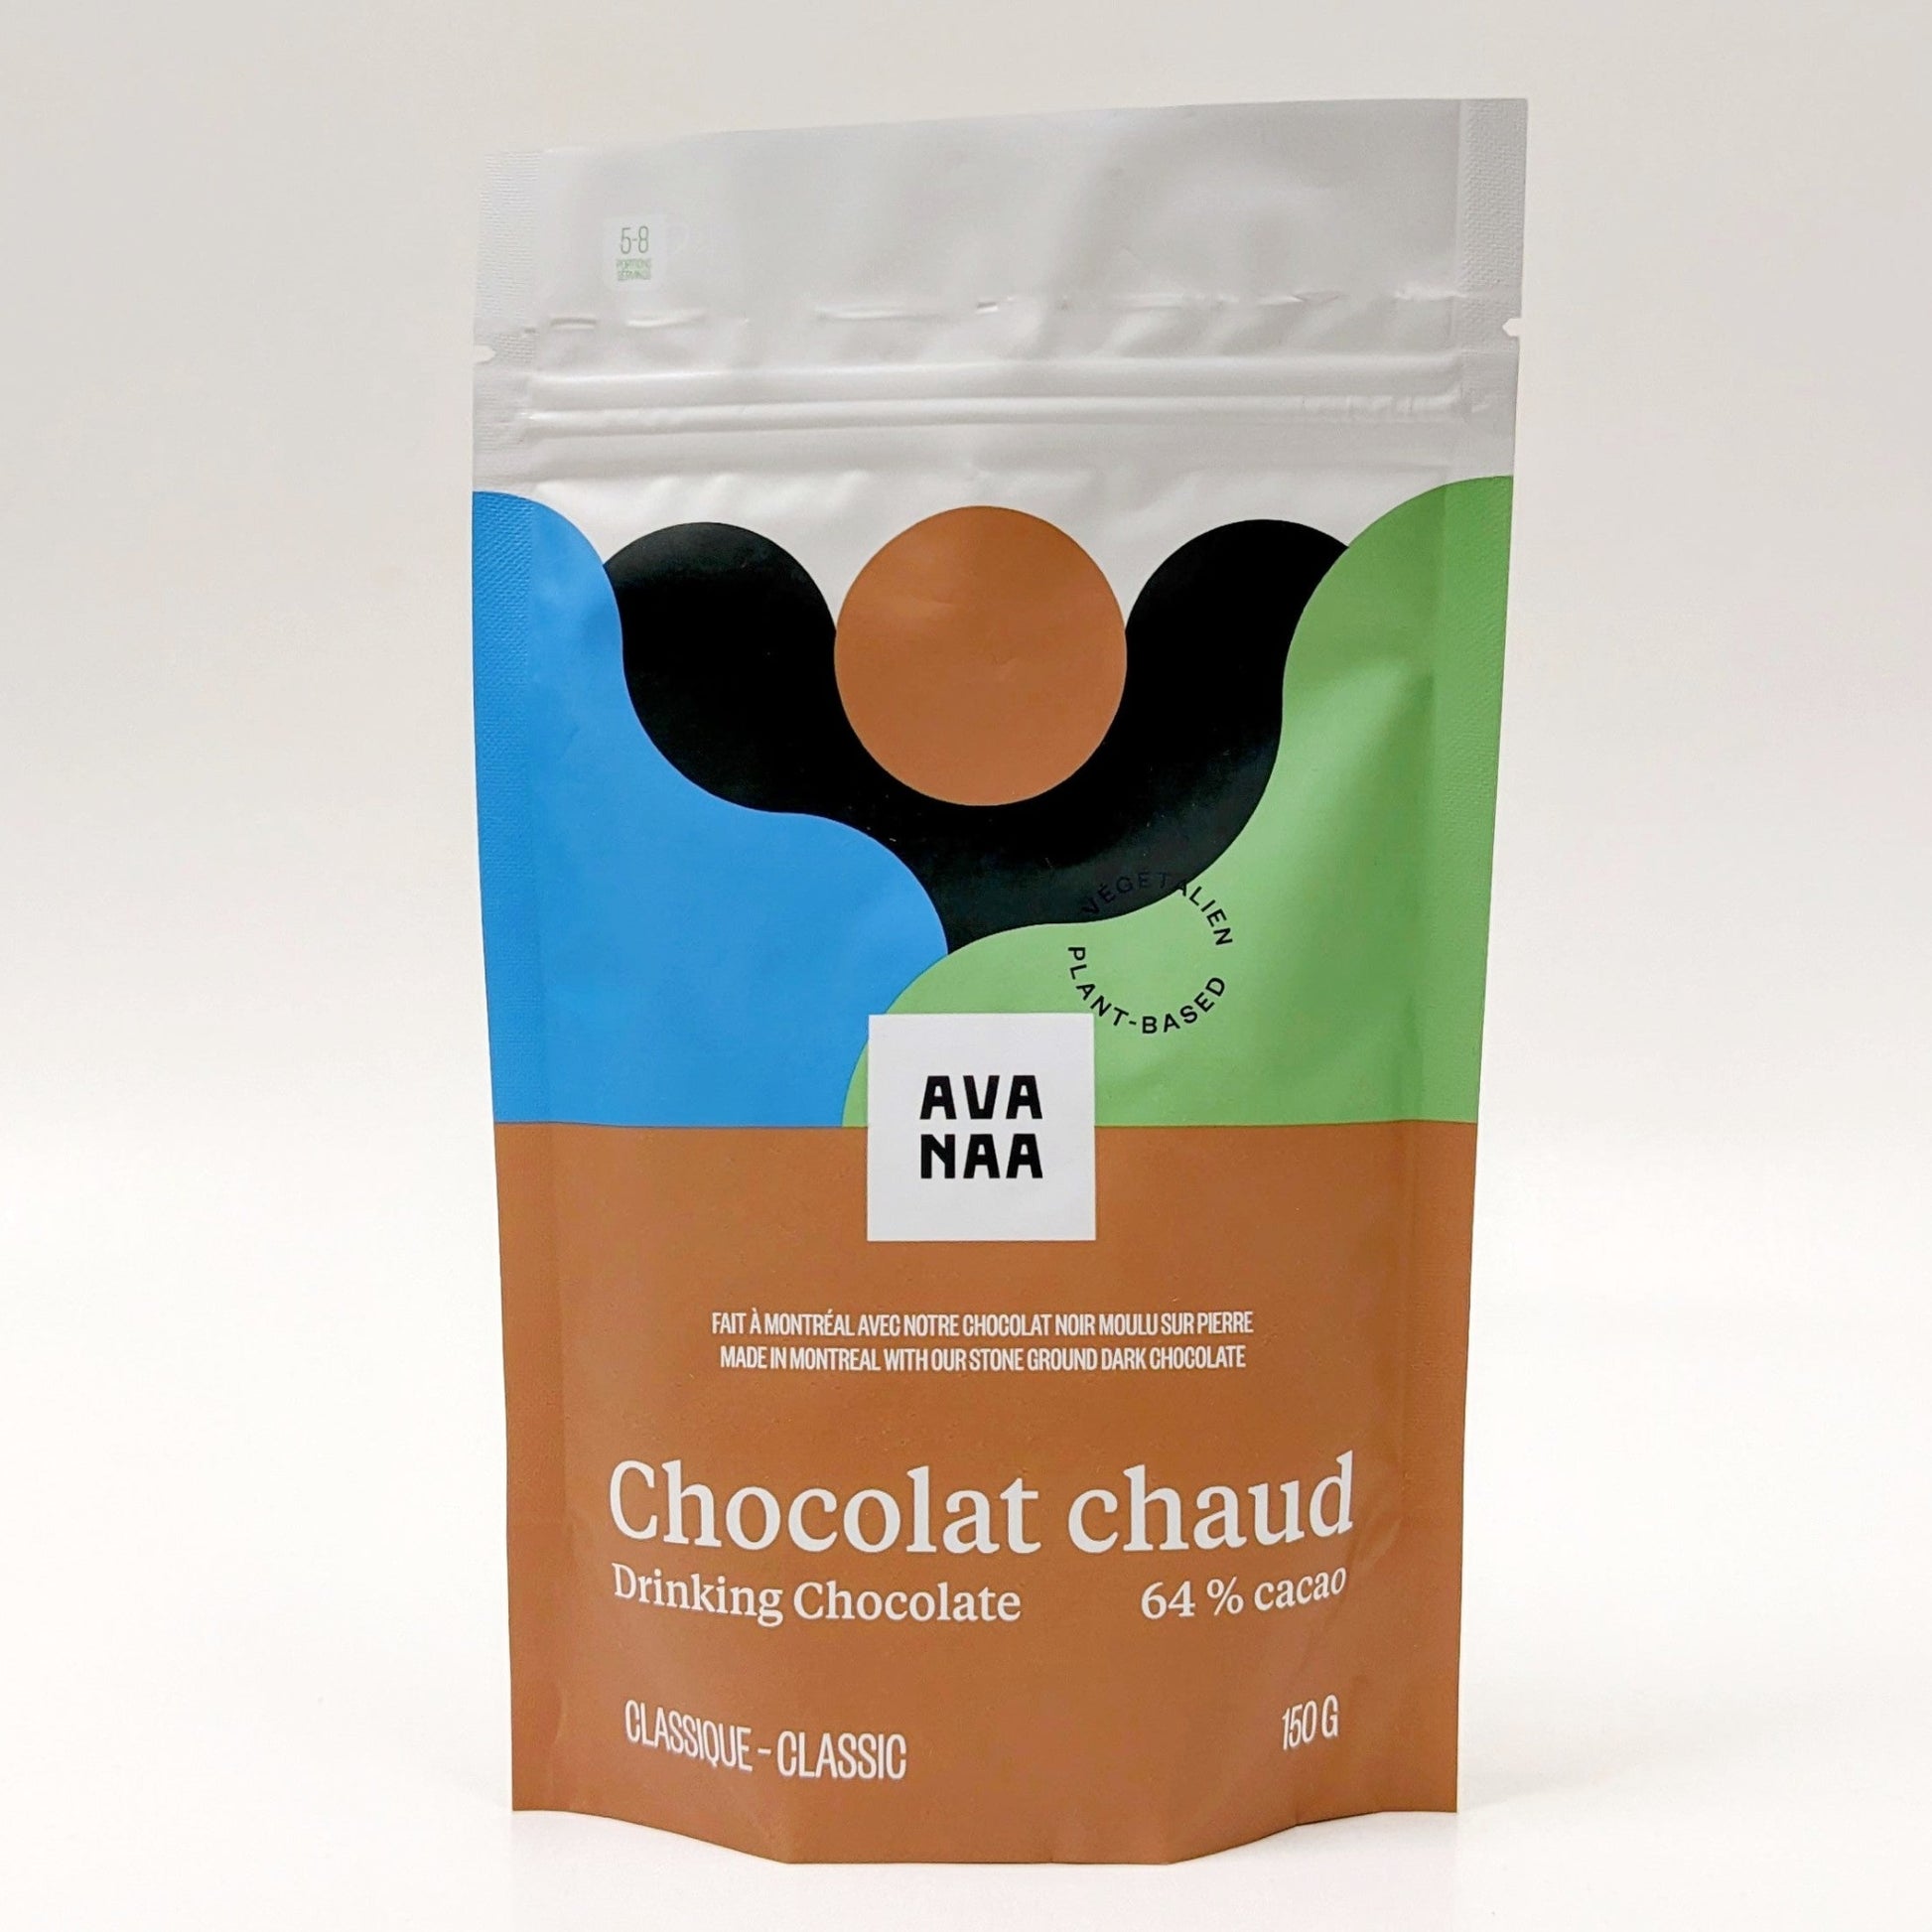 Chocolat chaud - Avanaa